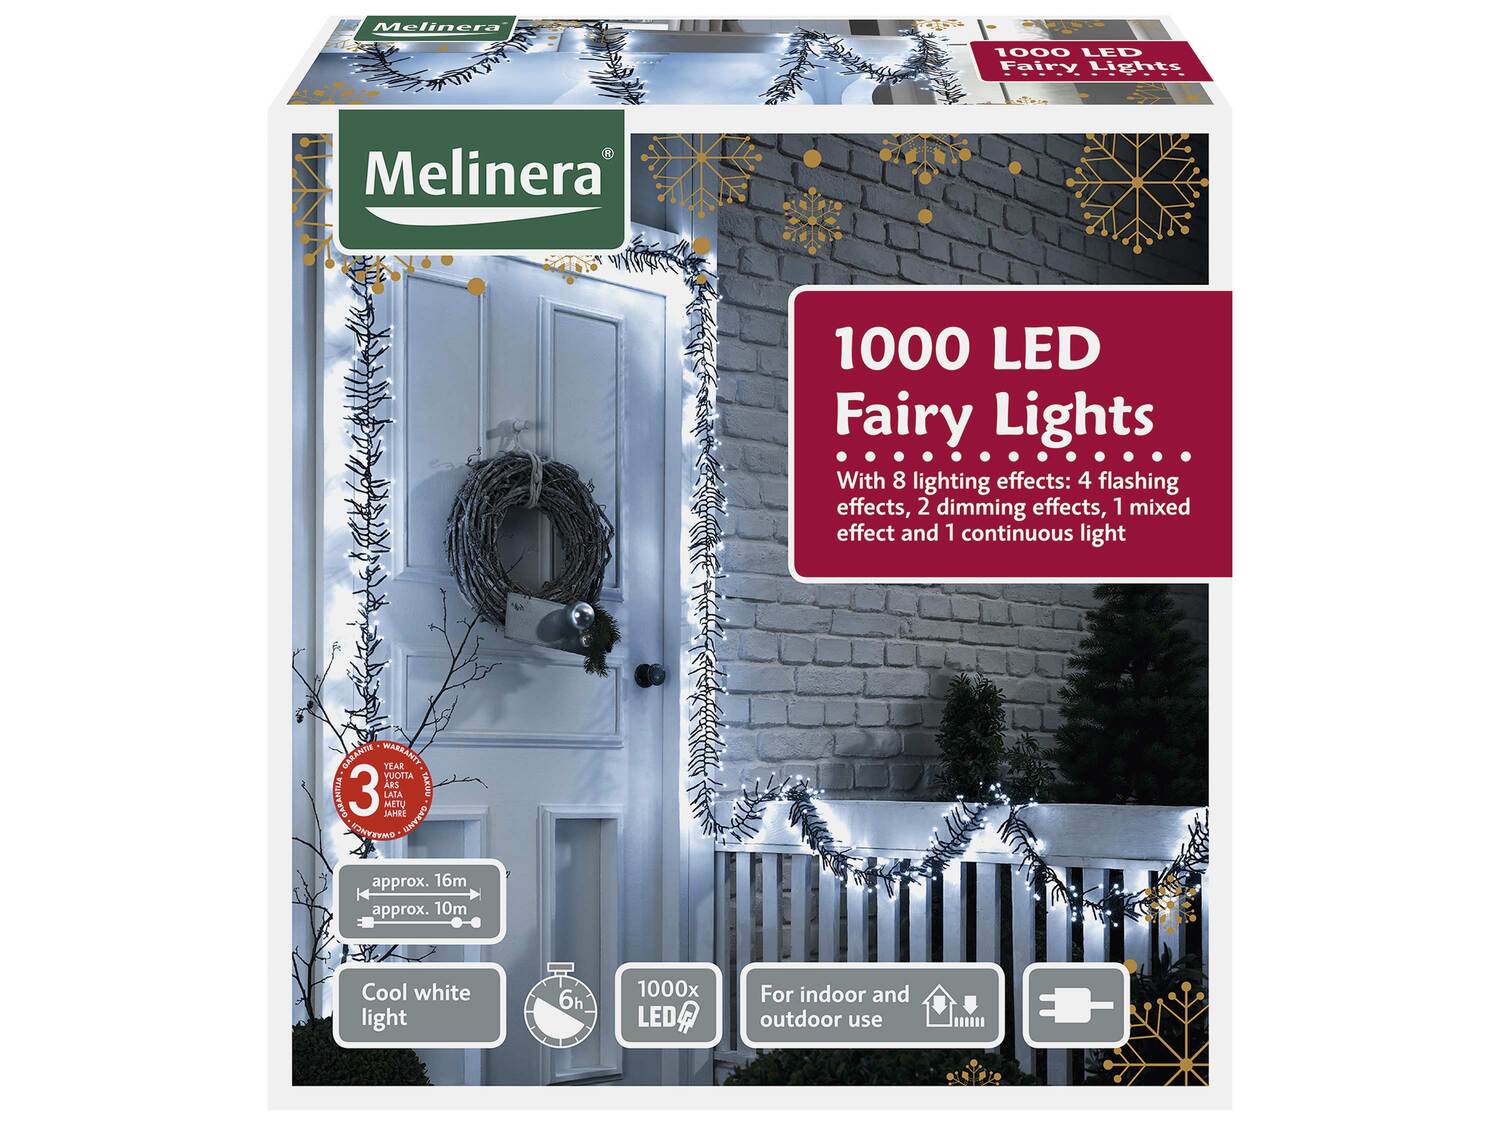 Girlanda świetlna, 1000 diod LED Melinera, cena 119,00 PLN 
3 kolory 
- białe ...